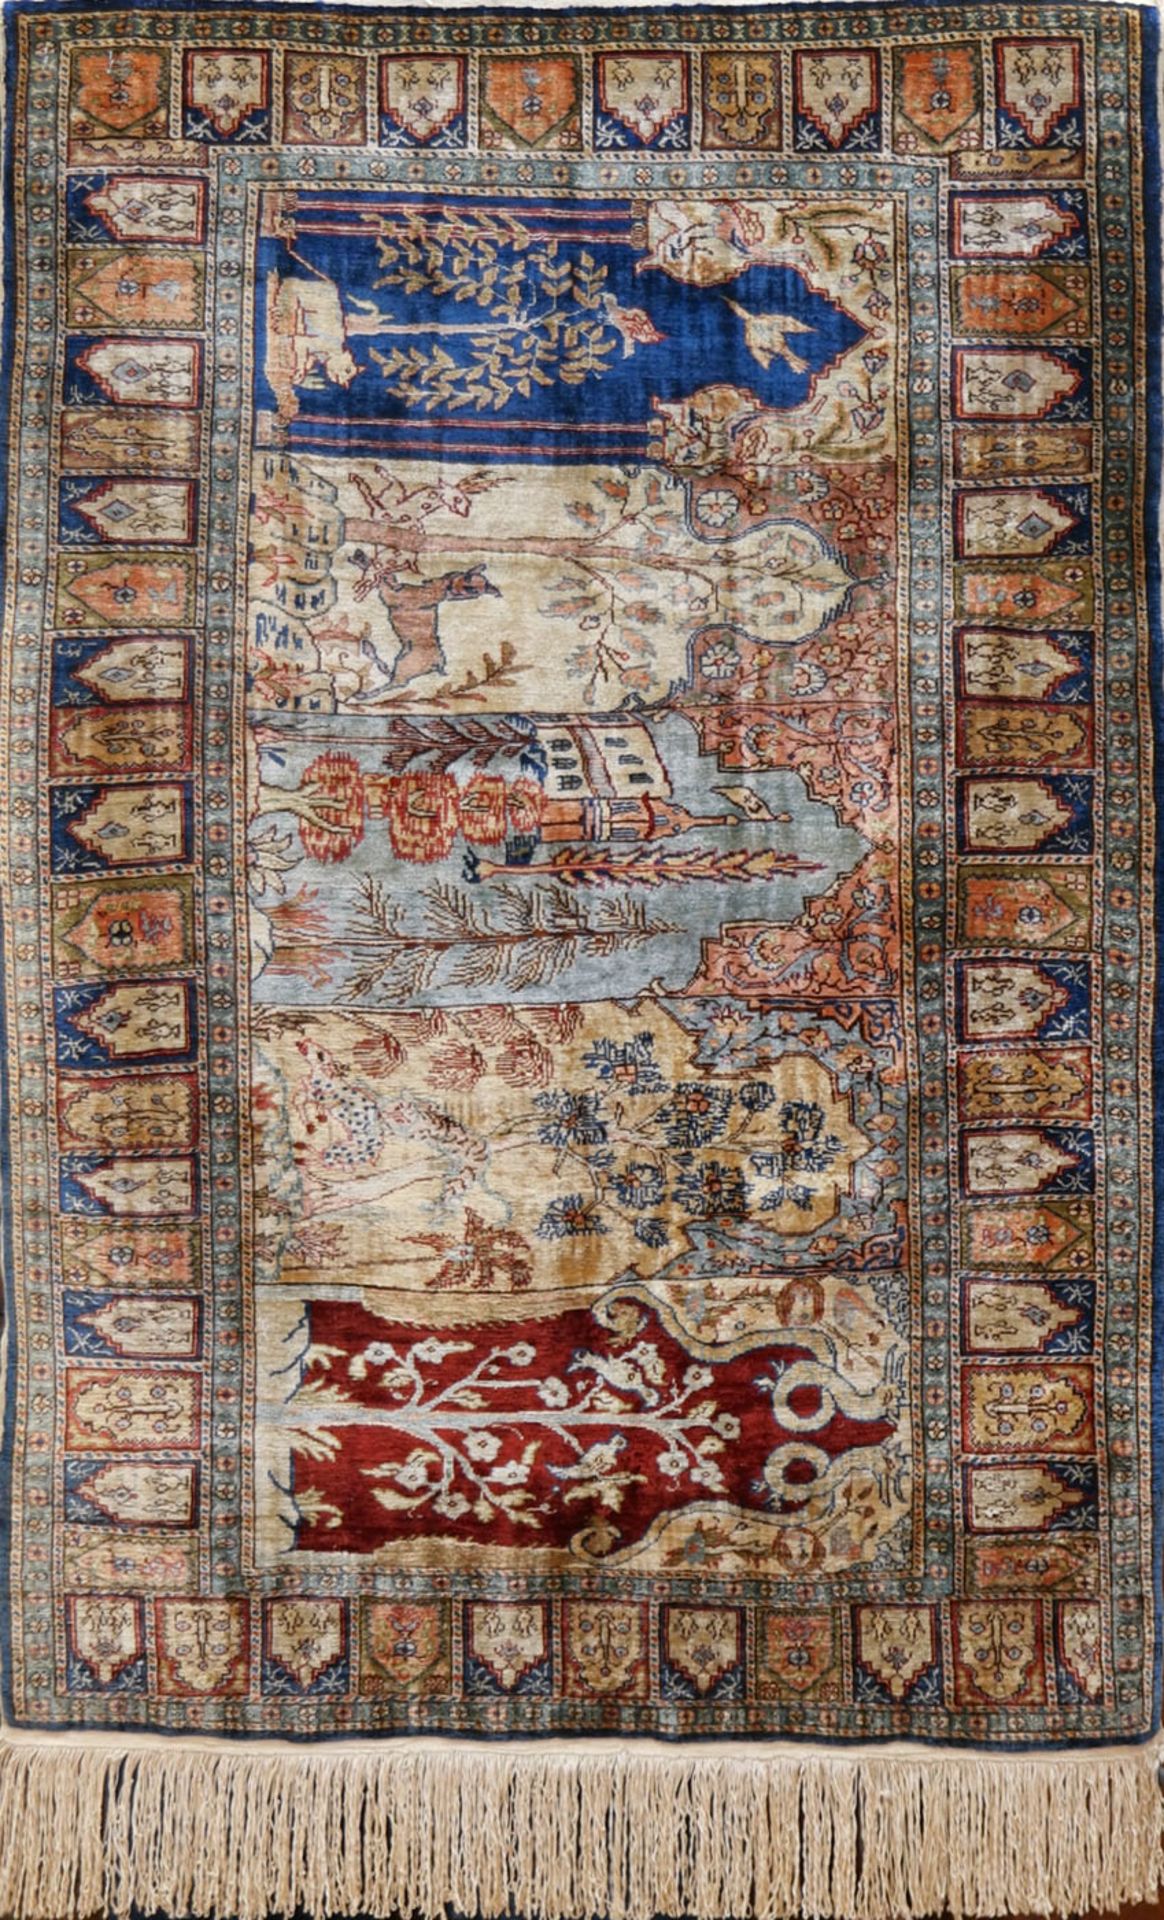 Gebetsteppich, Seide, verschiedenfarbige Arkaden mit Pfanzen- und Tiermotiven, 97x65 cm